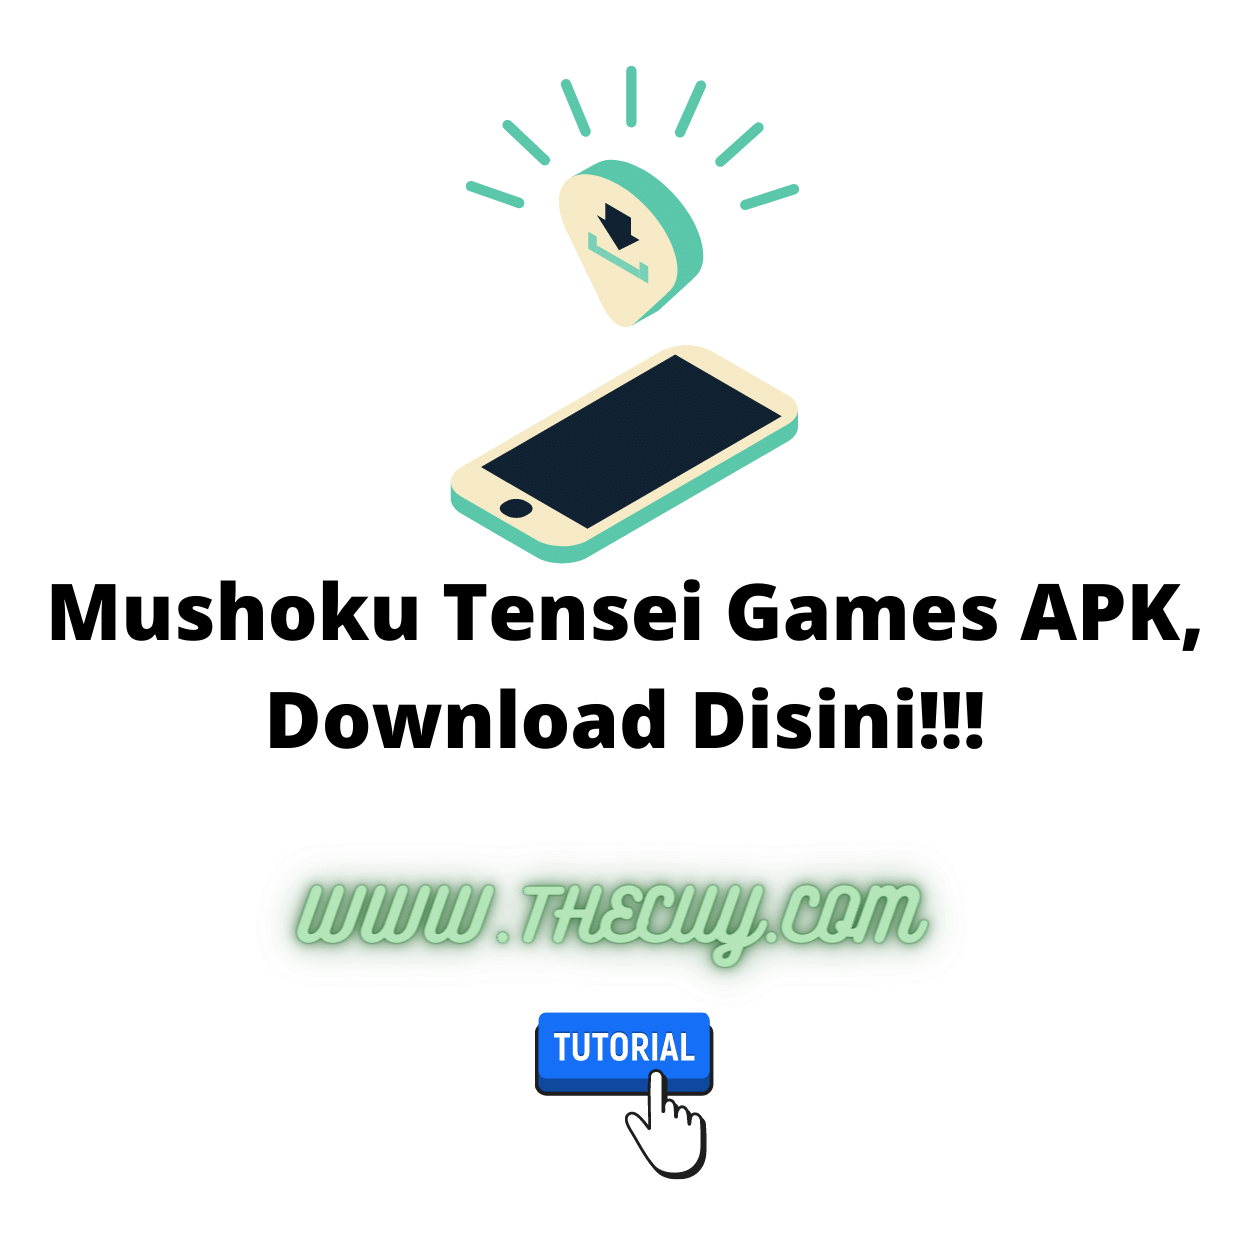 Mushoku Tensei Games APK, Download Disini!!!